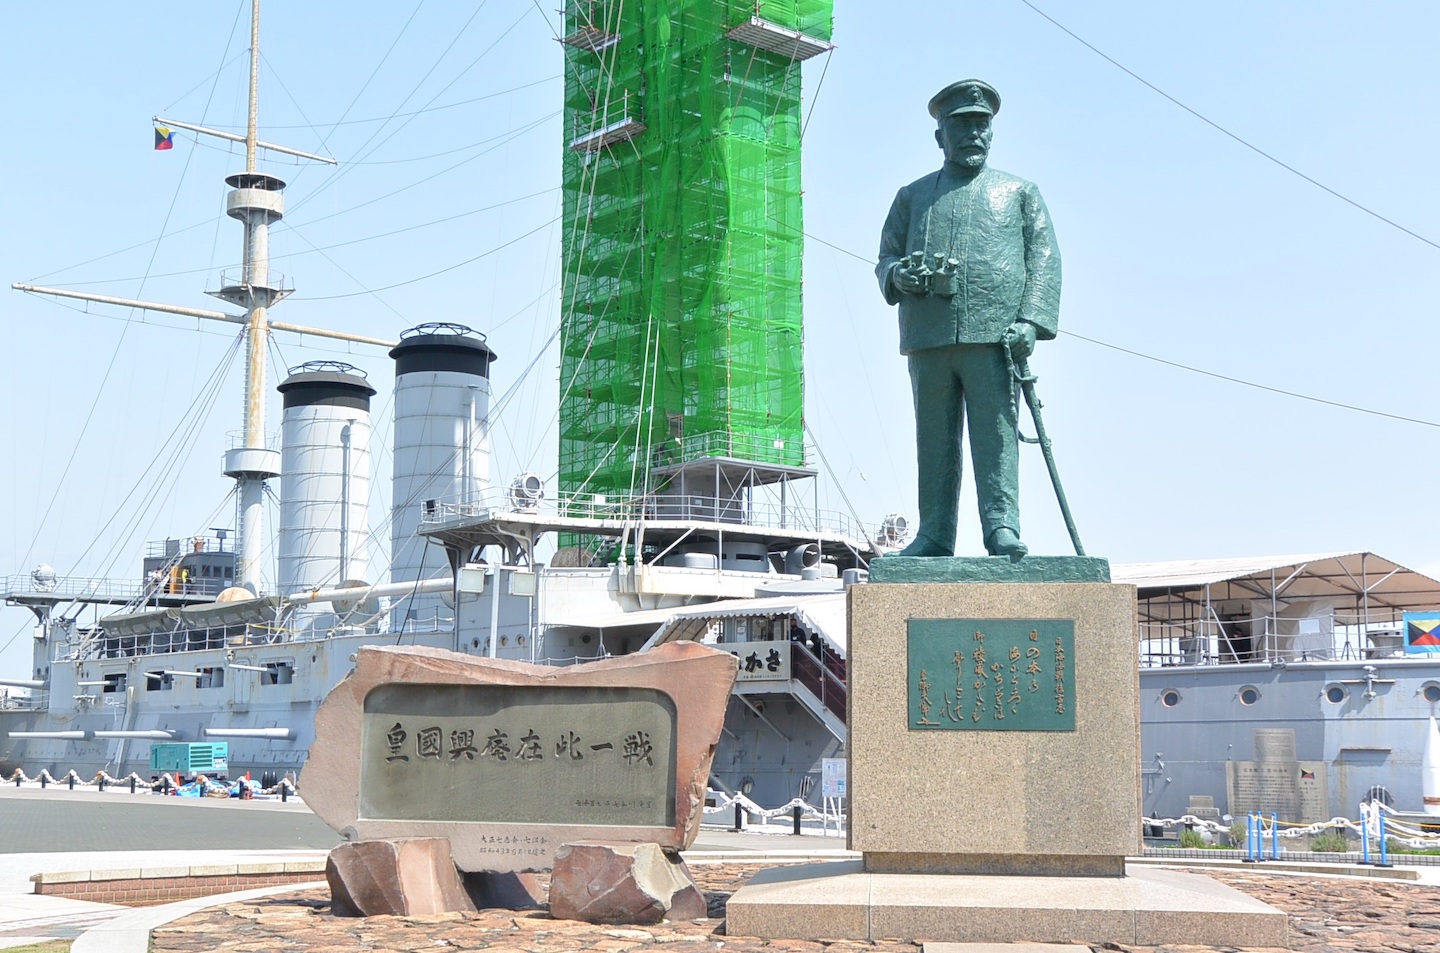 写真5)東郷平八郎の銅像と戦艦三笠